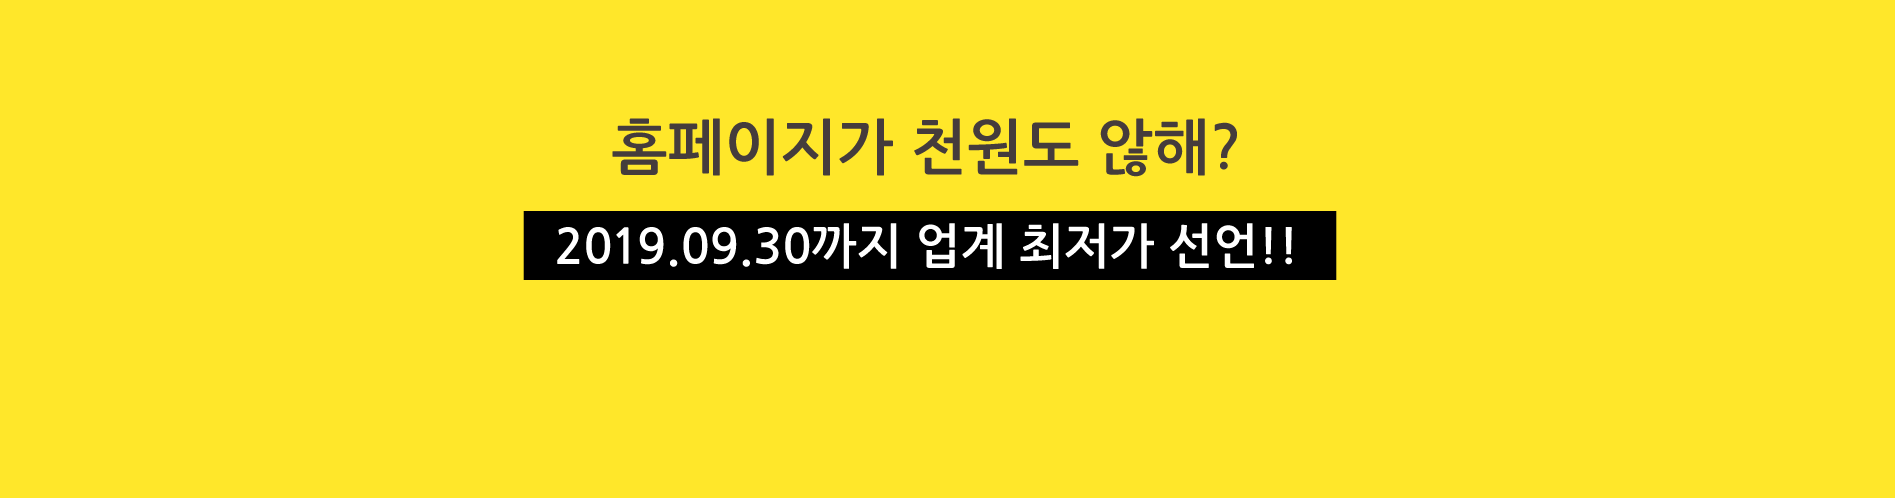 PC버전+모바일 버전까지 업계 최저가 선언!! 2019.09.30까지